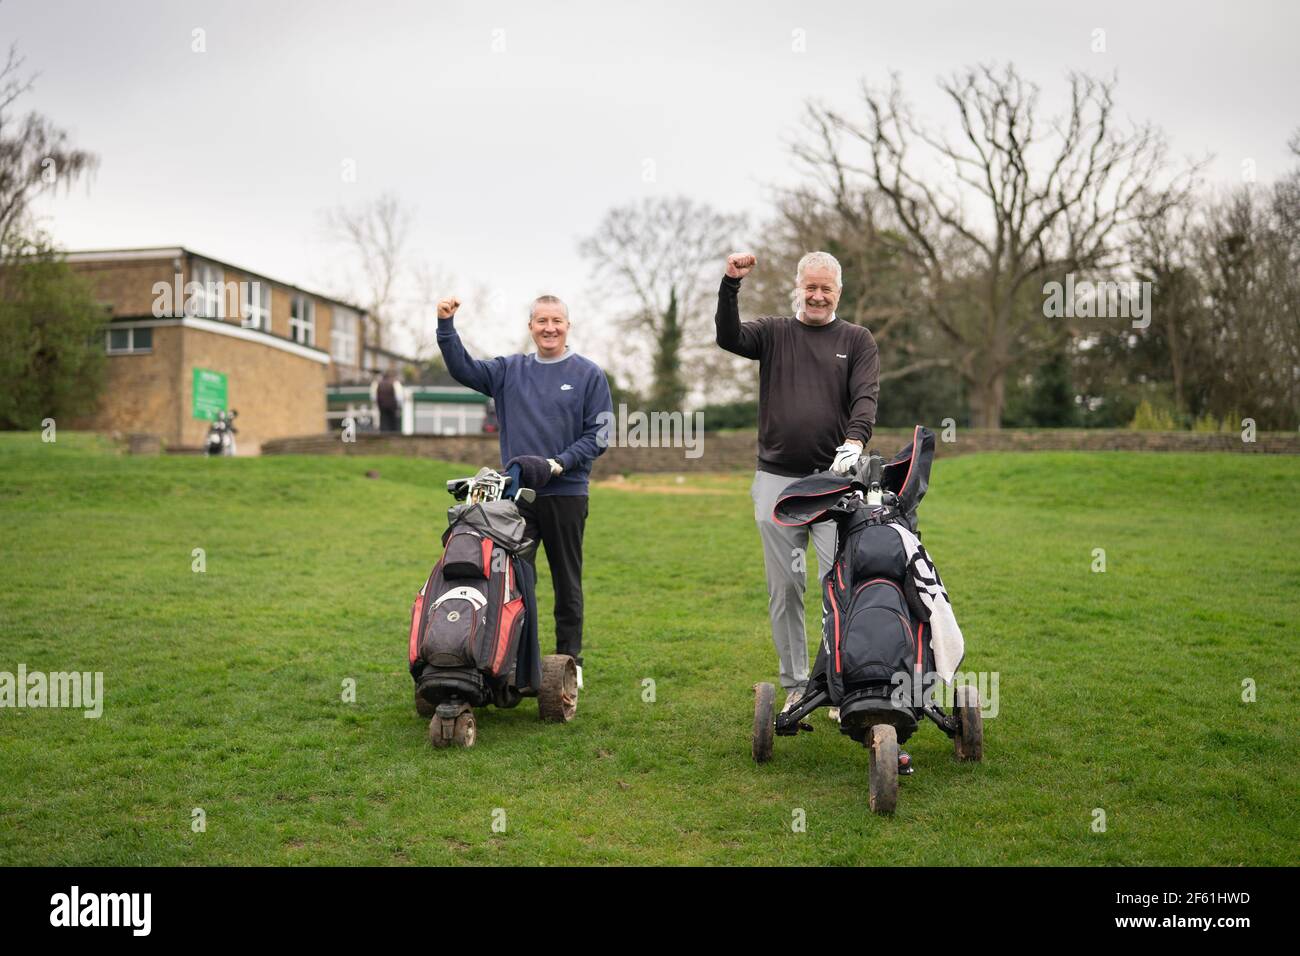 Londra, Regno Unito. 29 marzo 2021, Londra, Regno Unito: I golfisti del Brent Valley Golf Course il giorno in cui il golf ritorna come parte della tabella di marcia del governo fuori dai blocchi. Foto: Roger Garfield/Alamy Live News Foto Stock